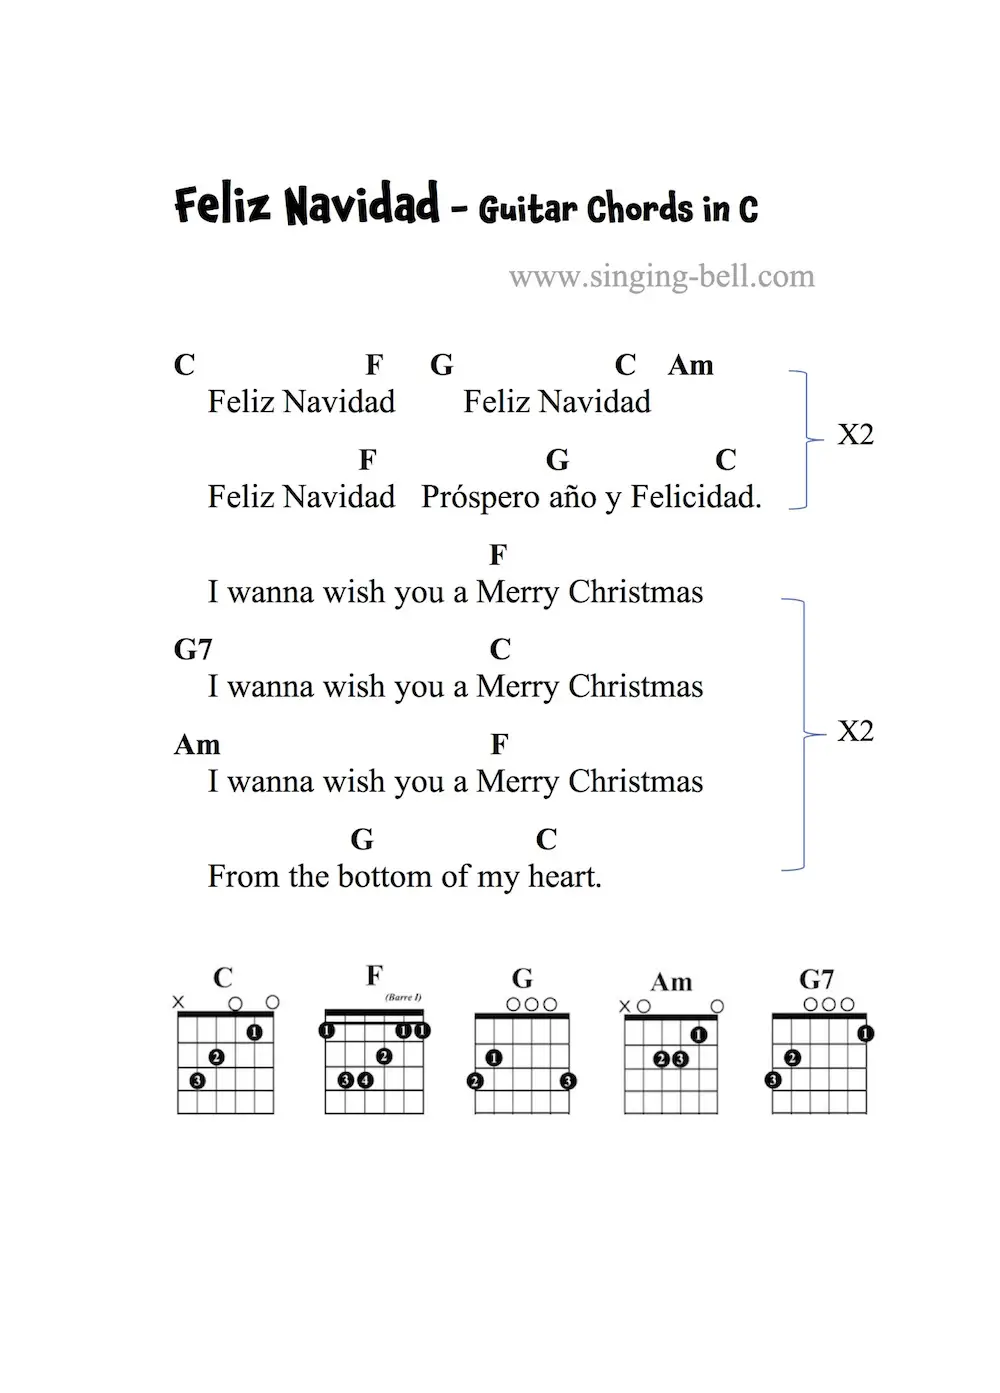 Feliz Navidad - Guitar Chords and Tabs in C.